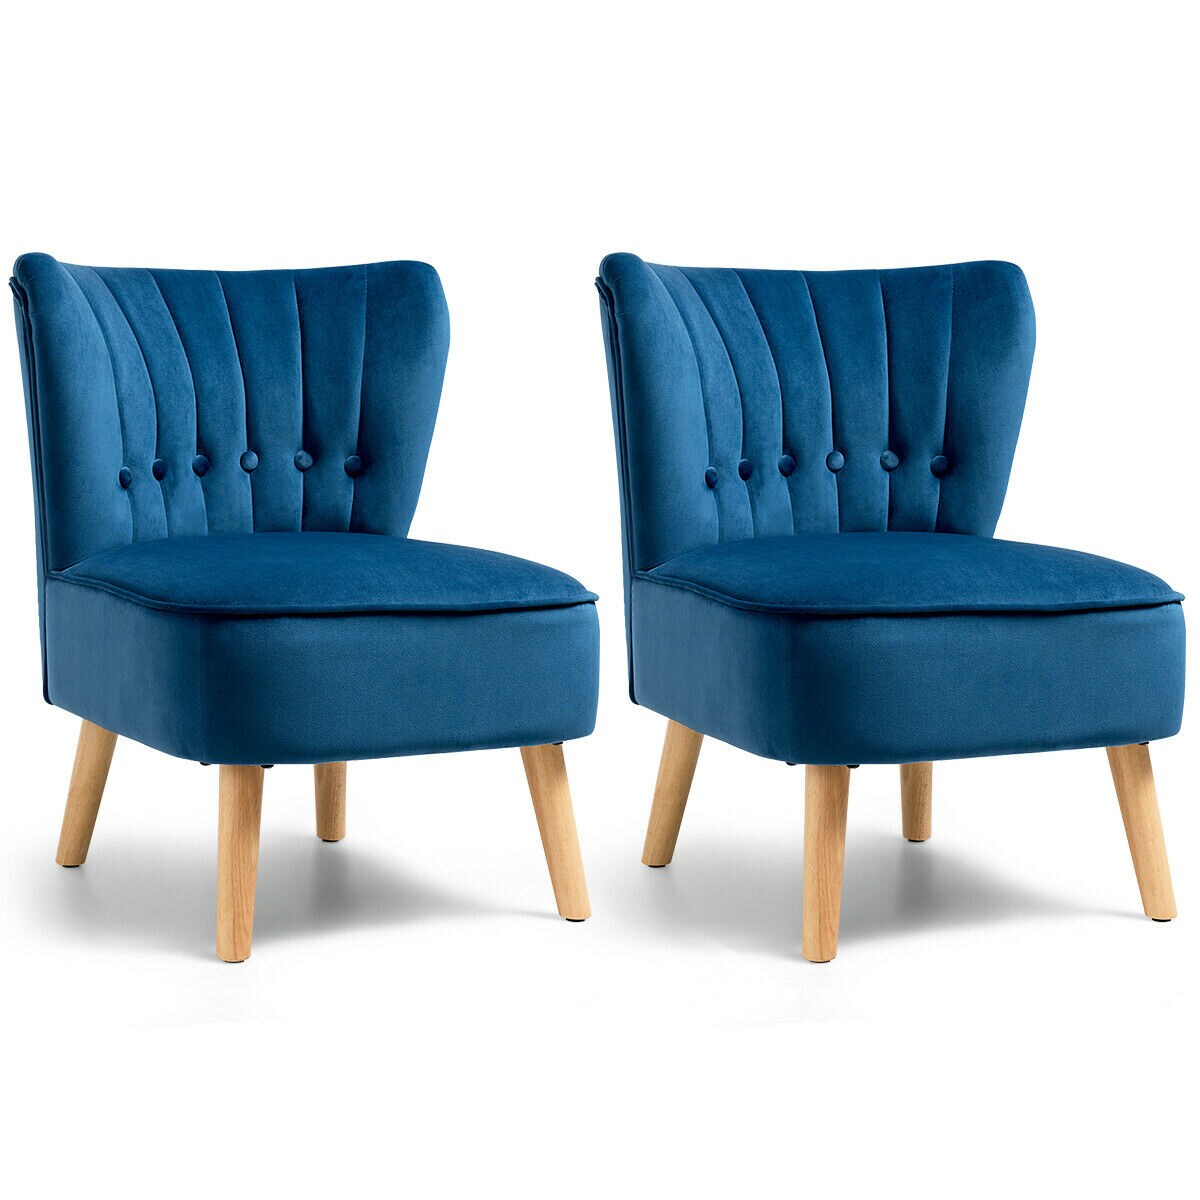 Gymax 2PCS Accent Chair Armless Leisure Chair Single Sofa w/ Wood Legs Blue